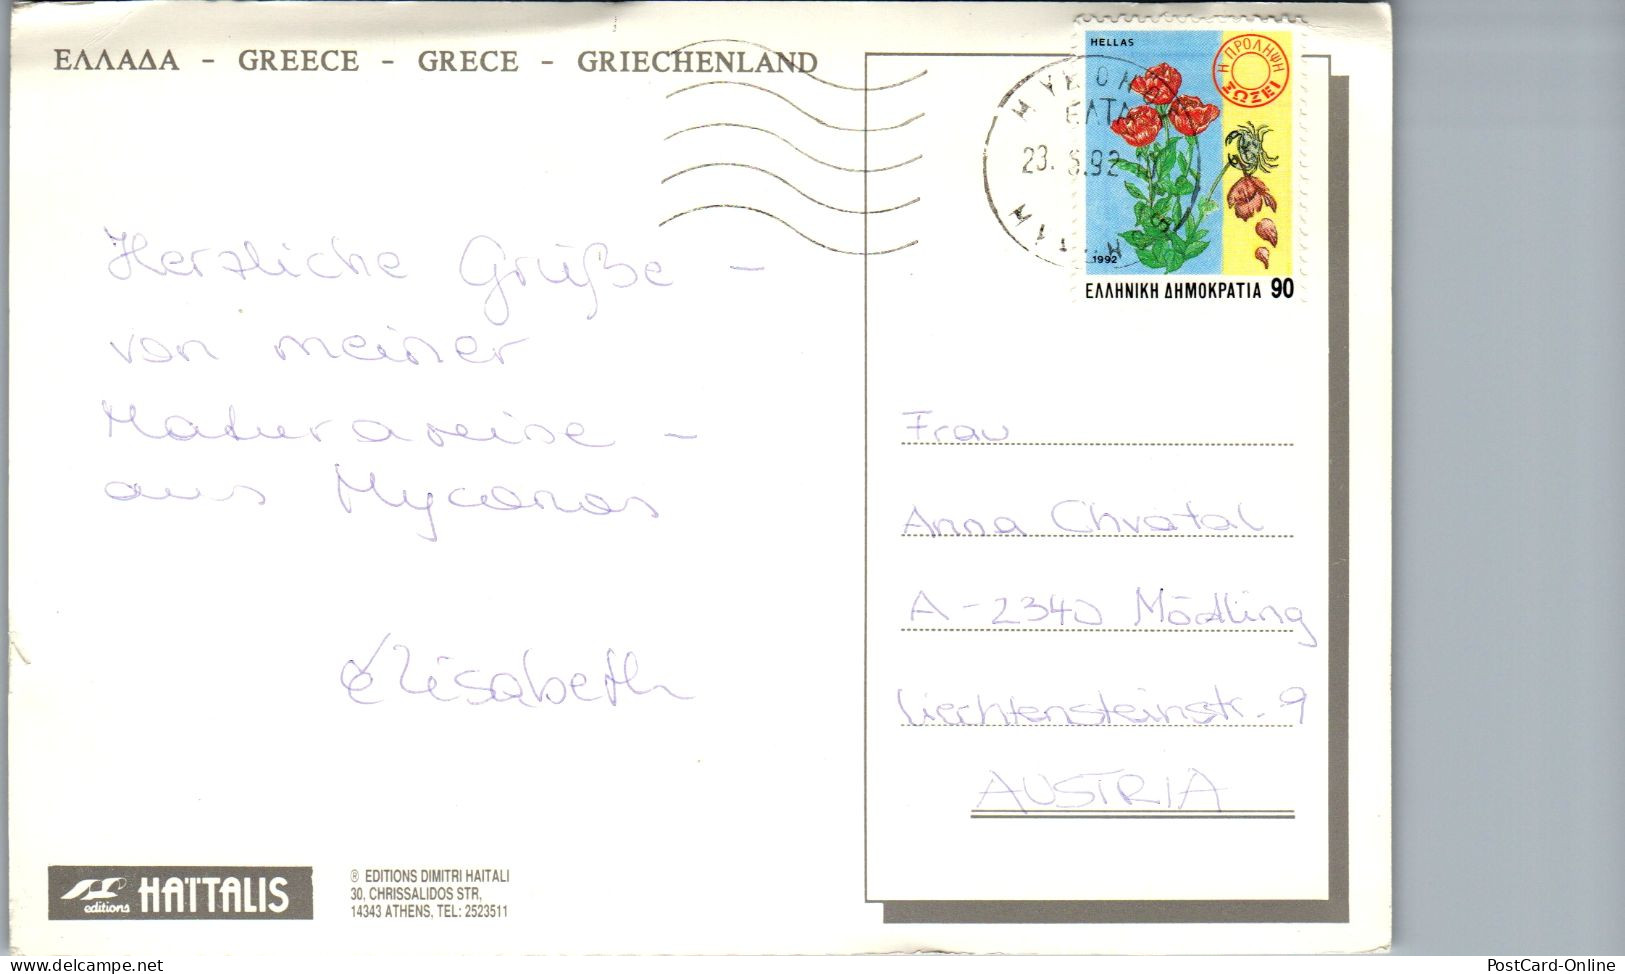 51121 - Griechenland - Mykonos , Panorama - Gelaufen 1992 - Griechenland